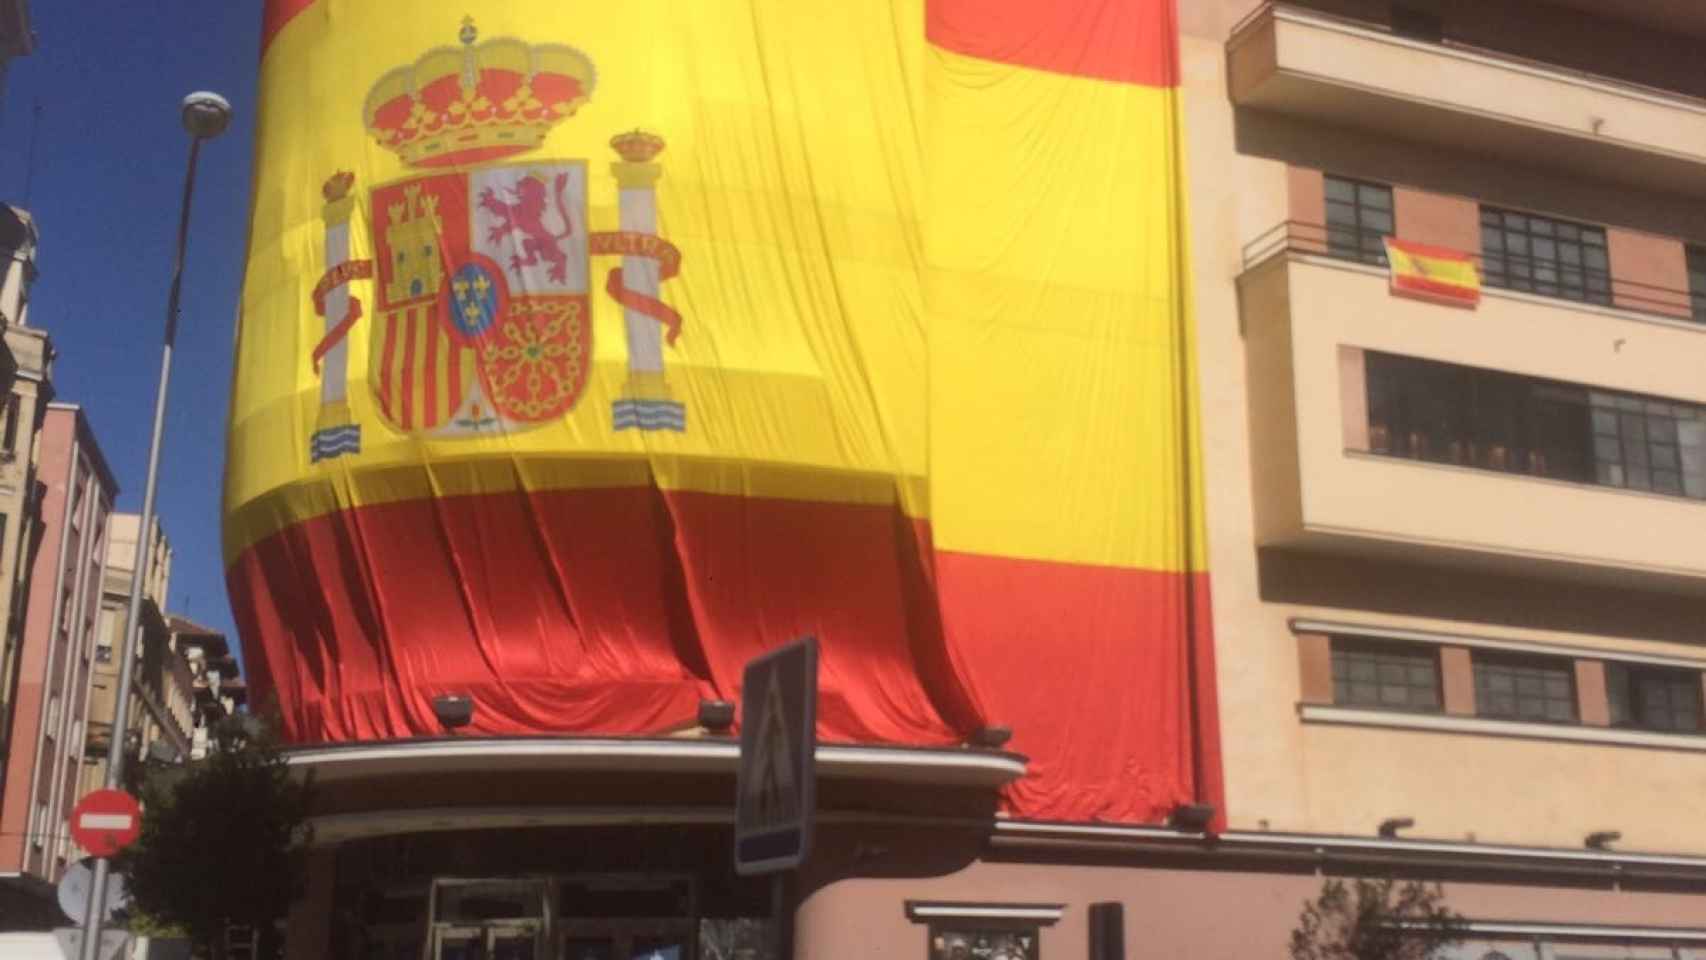 El Teatro Barceló forrado en una gran bandera de España. Cedida por Íñigo de Lorenzo.